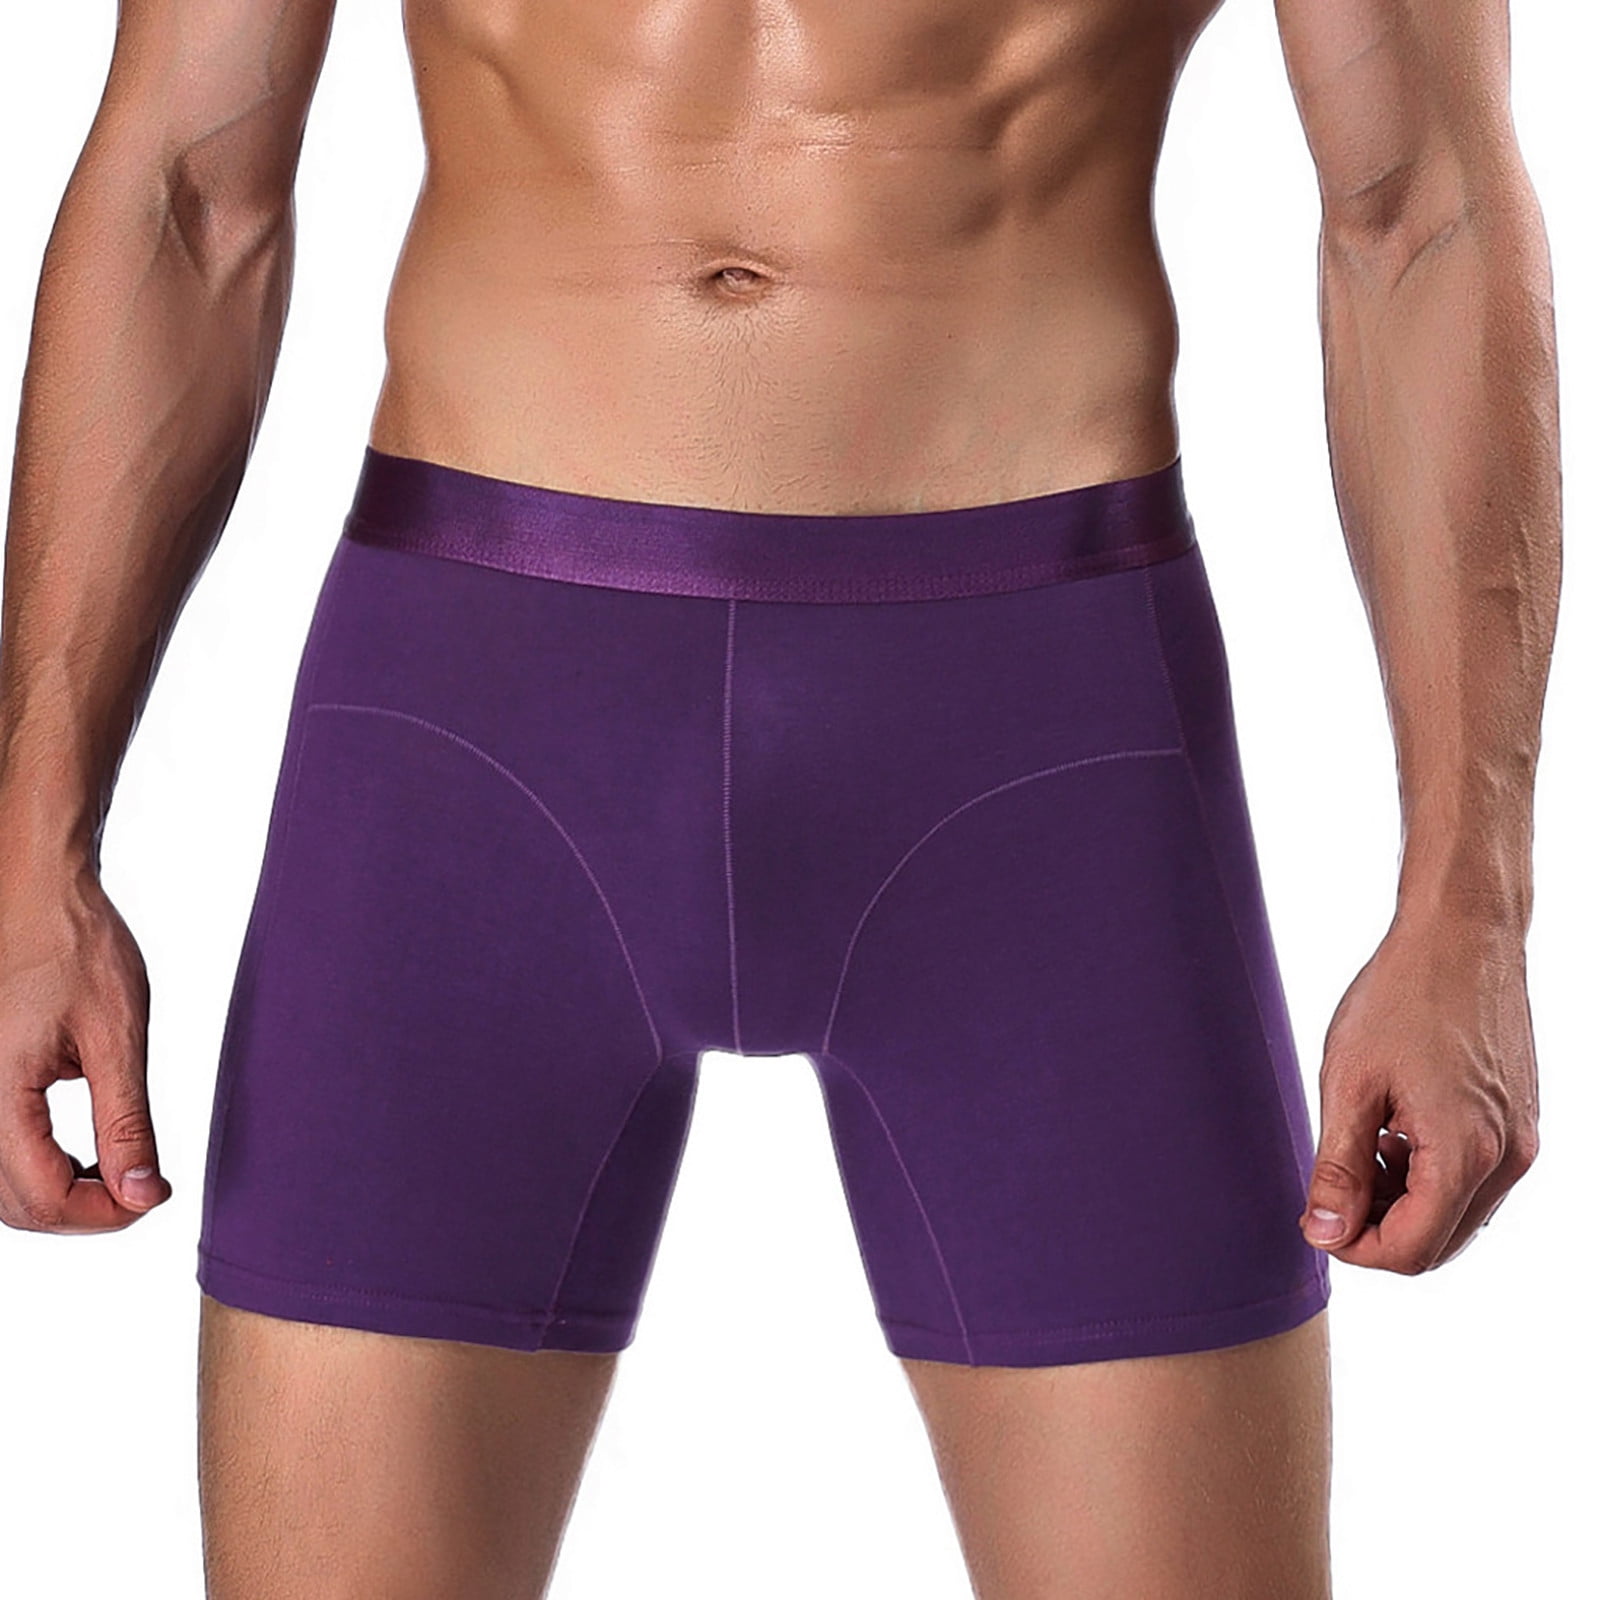 QAZXD Men's Underwear Ice Silk Super Soft Comfort Breathable Cool Boxer  Briefs Buy 2 Get 1 Free（Purple，XXL） 